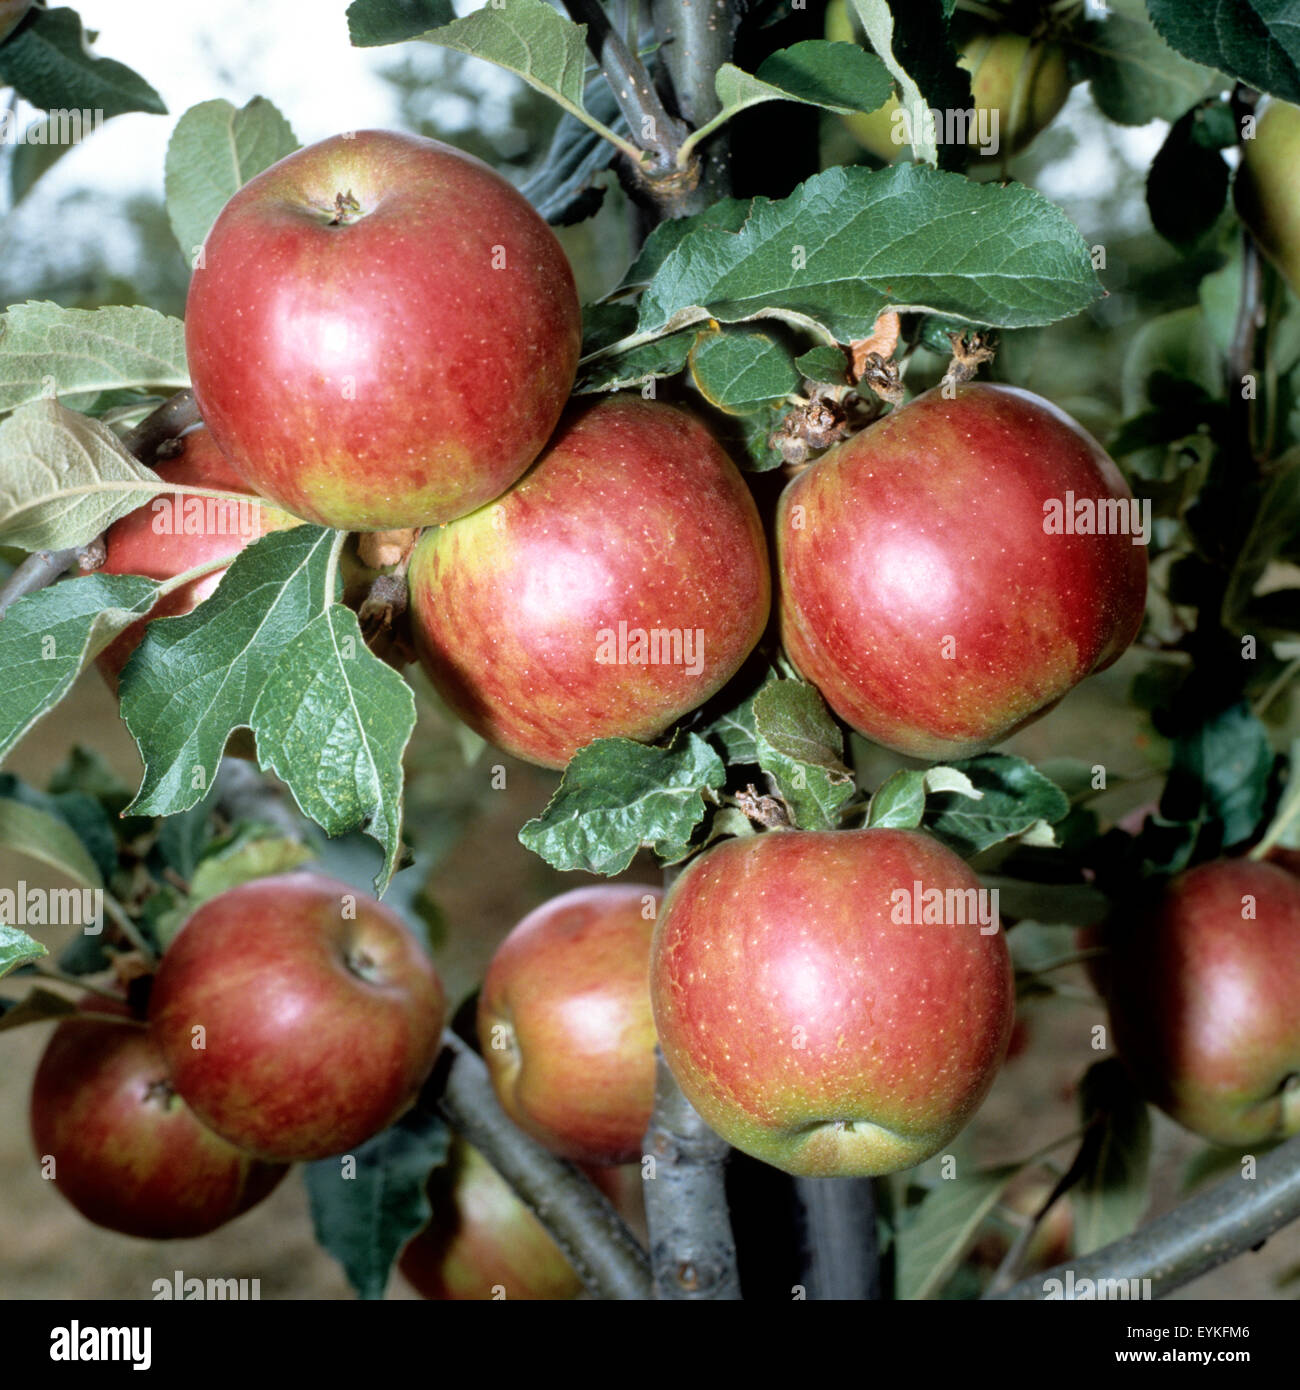 Florina; Apfel; Apfelsorte, Apfel, Kernobst, Obst, Foto Stock